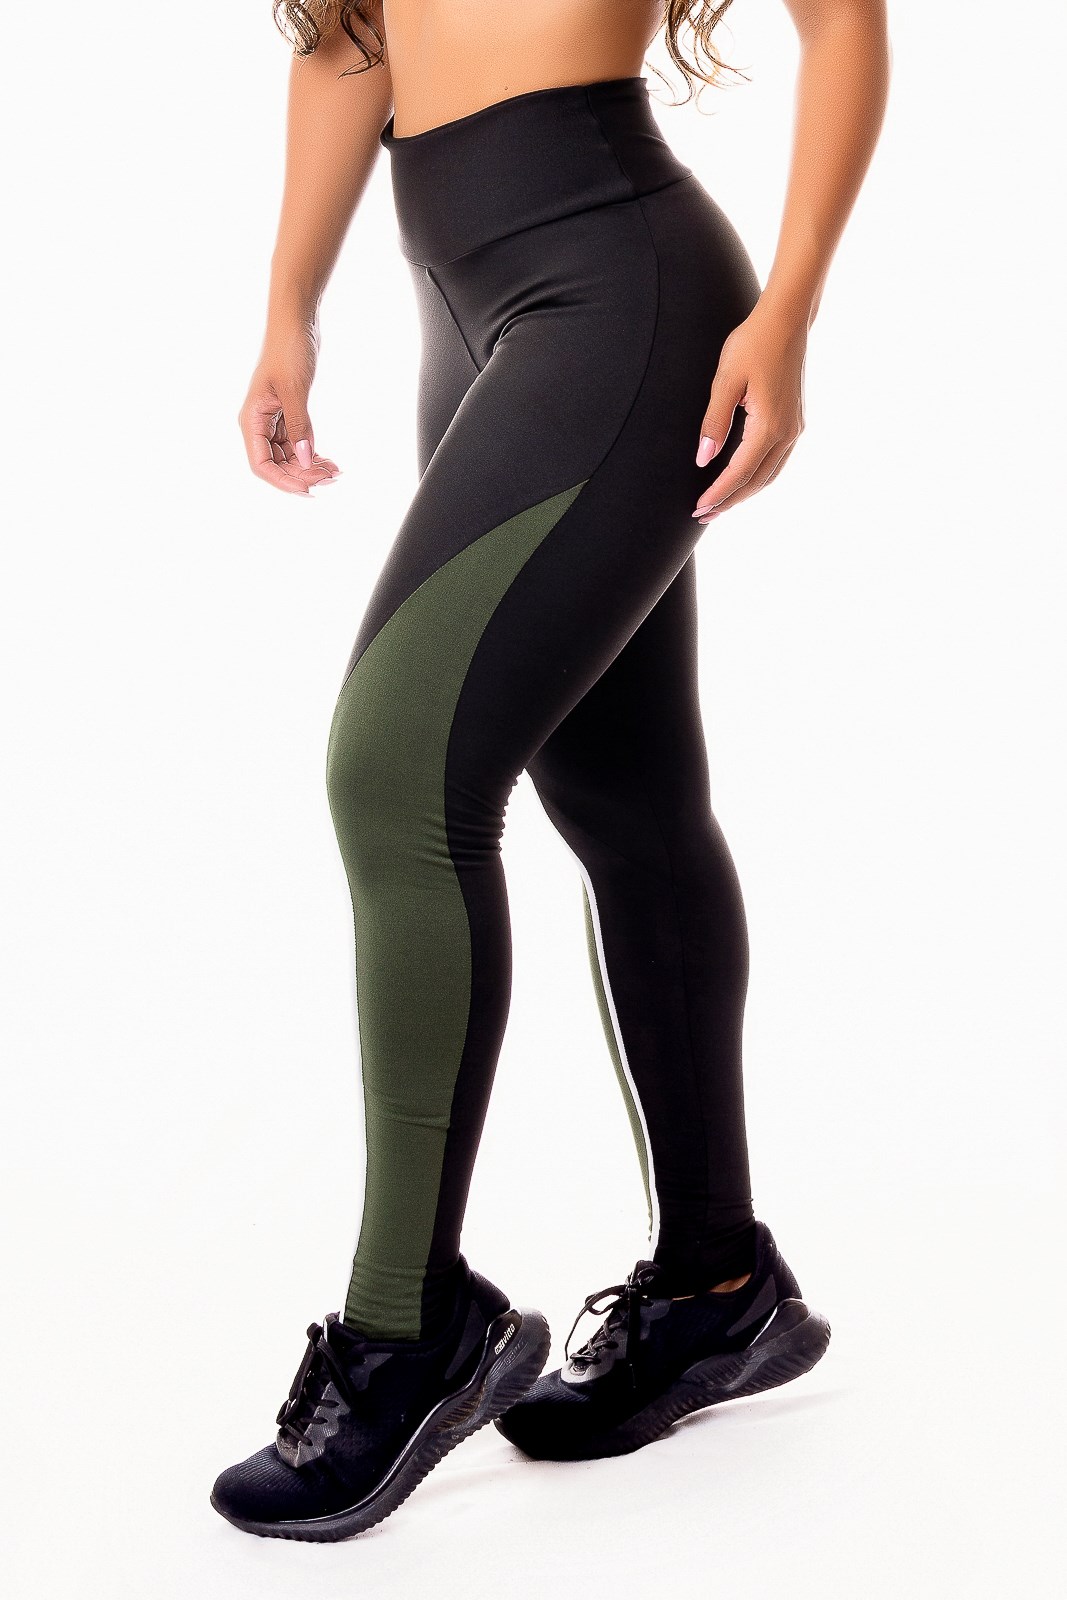 Calça Legging Fitness Academia Preta com Verde Militar e Vivo Branco  Cintura Alta REF: SV45 - Racy Modas